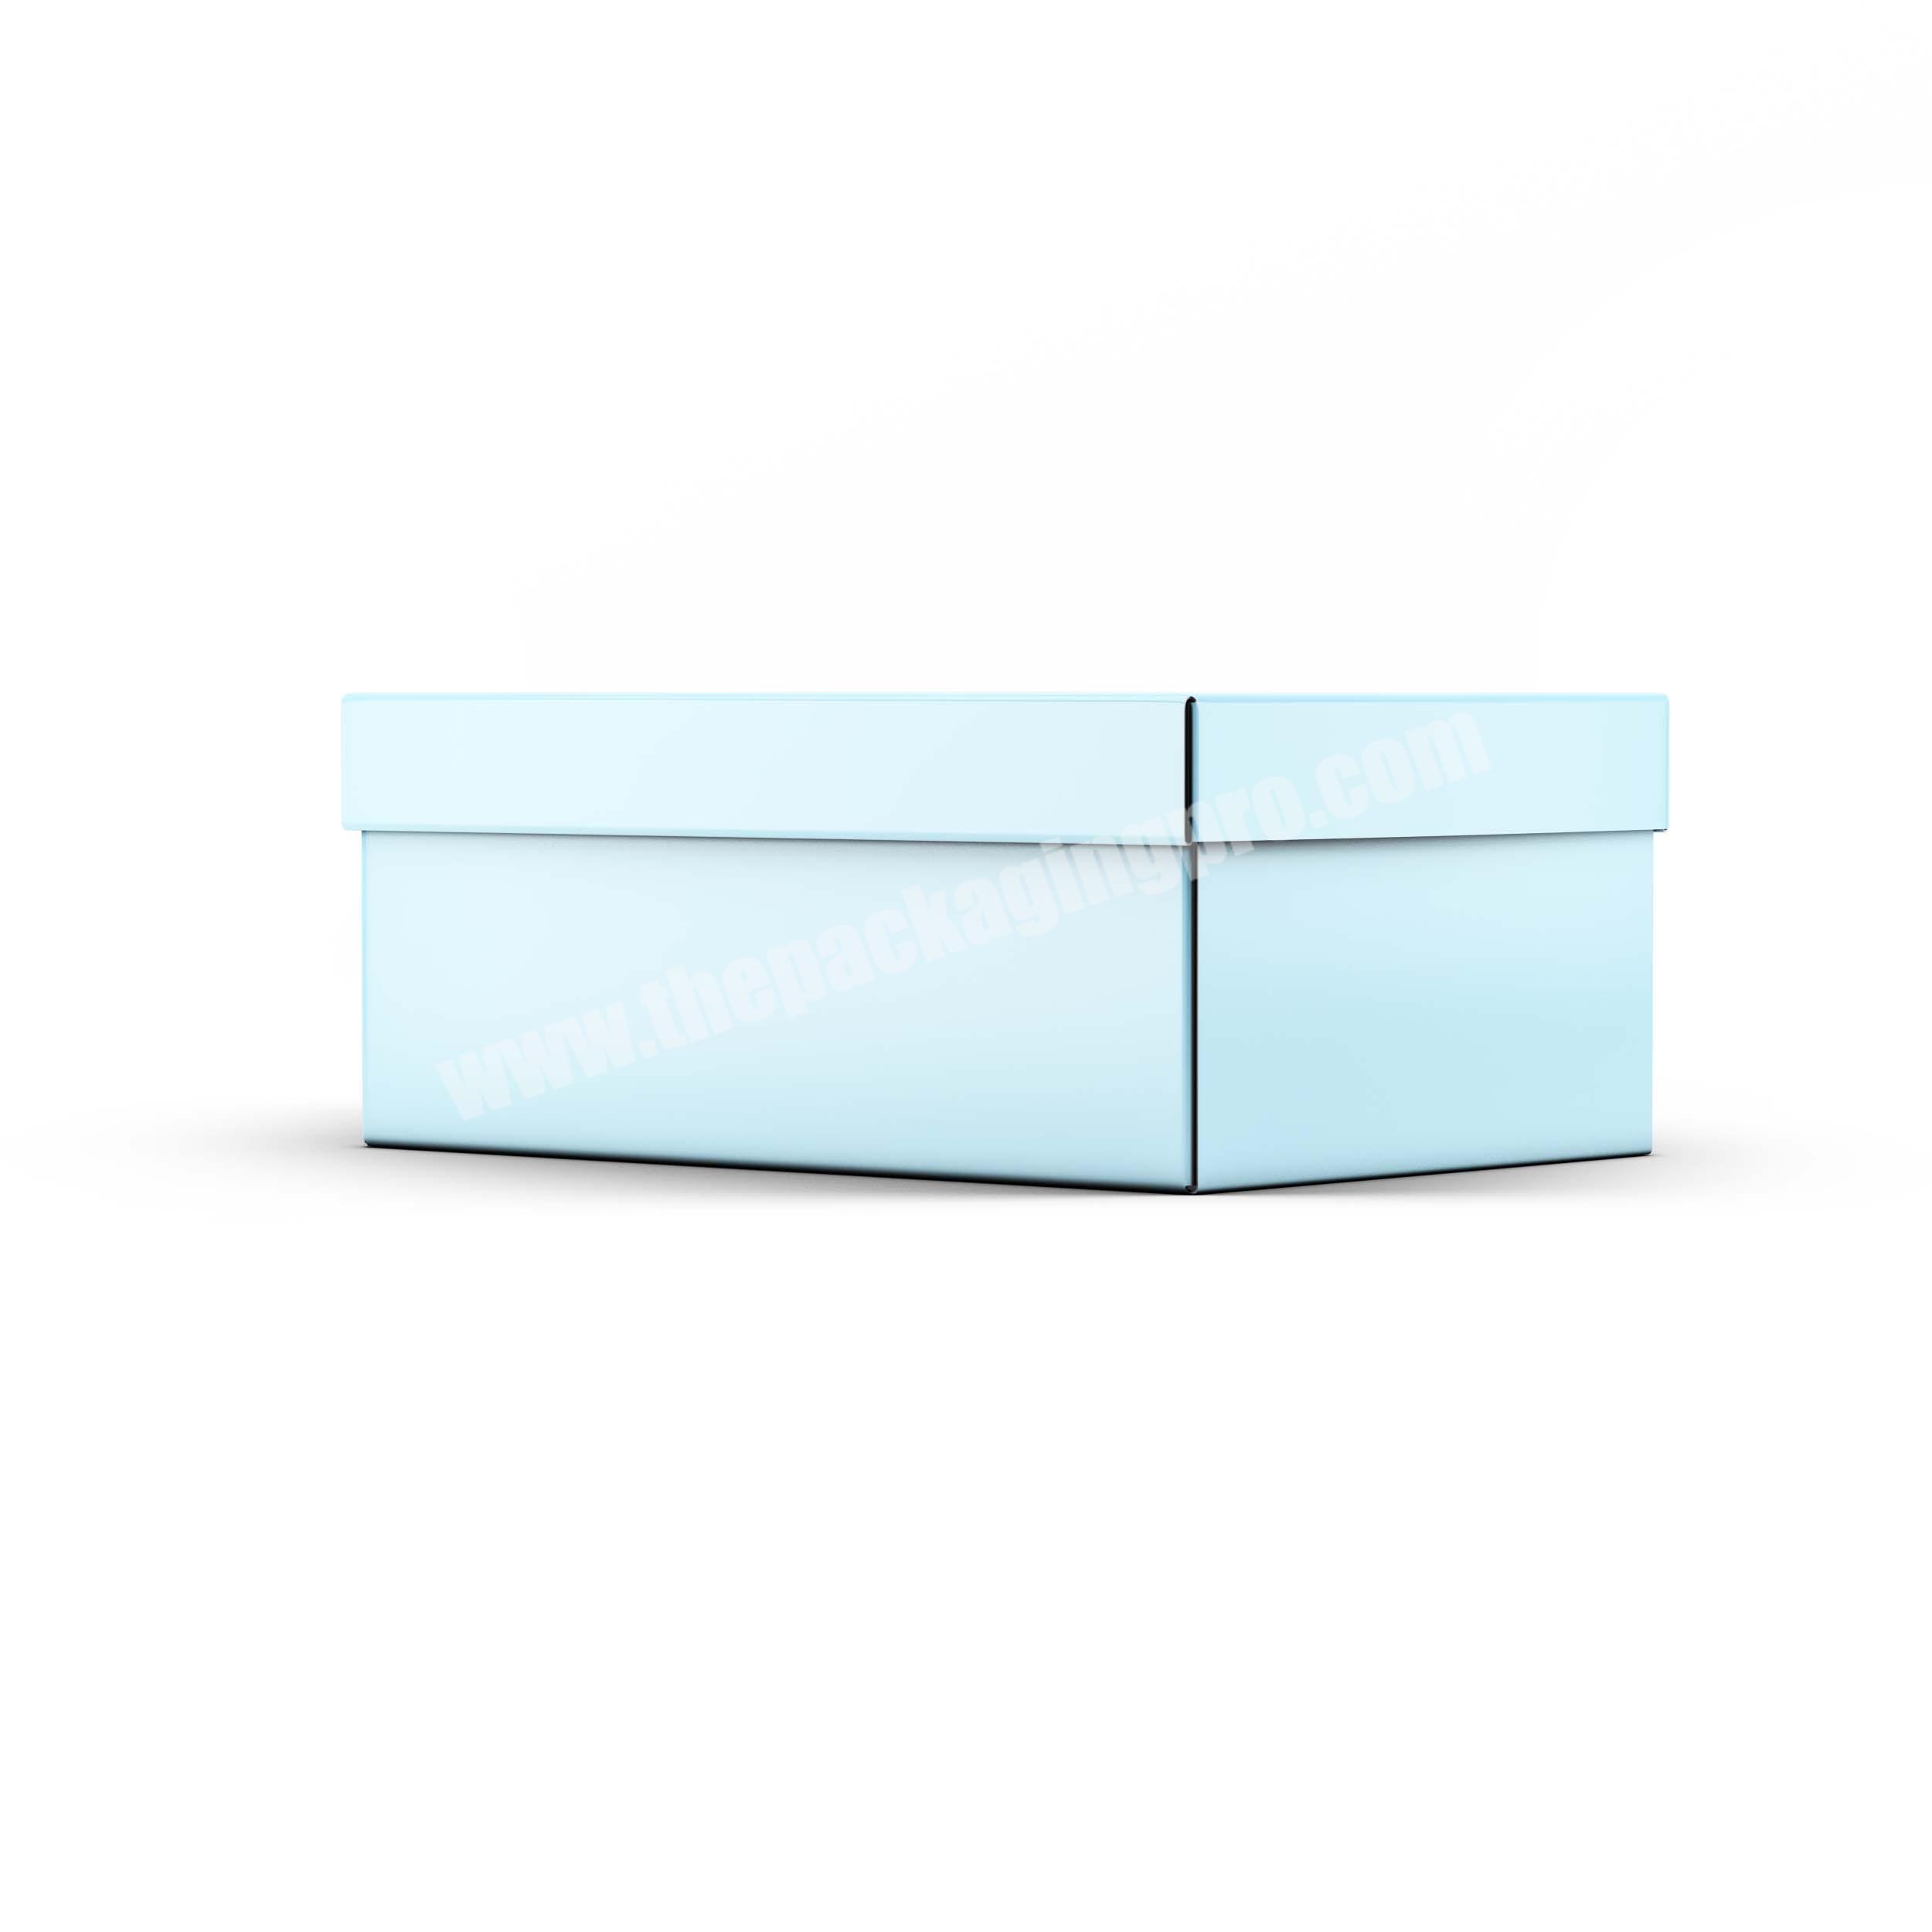 custom Large karton folding shoe box foldable rectanglg carton package box 